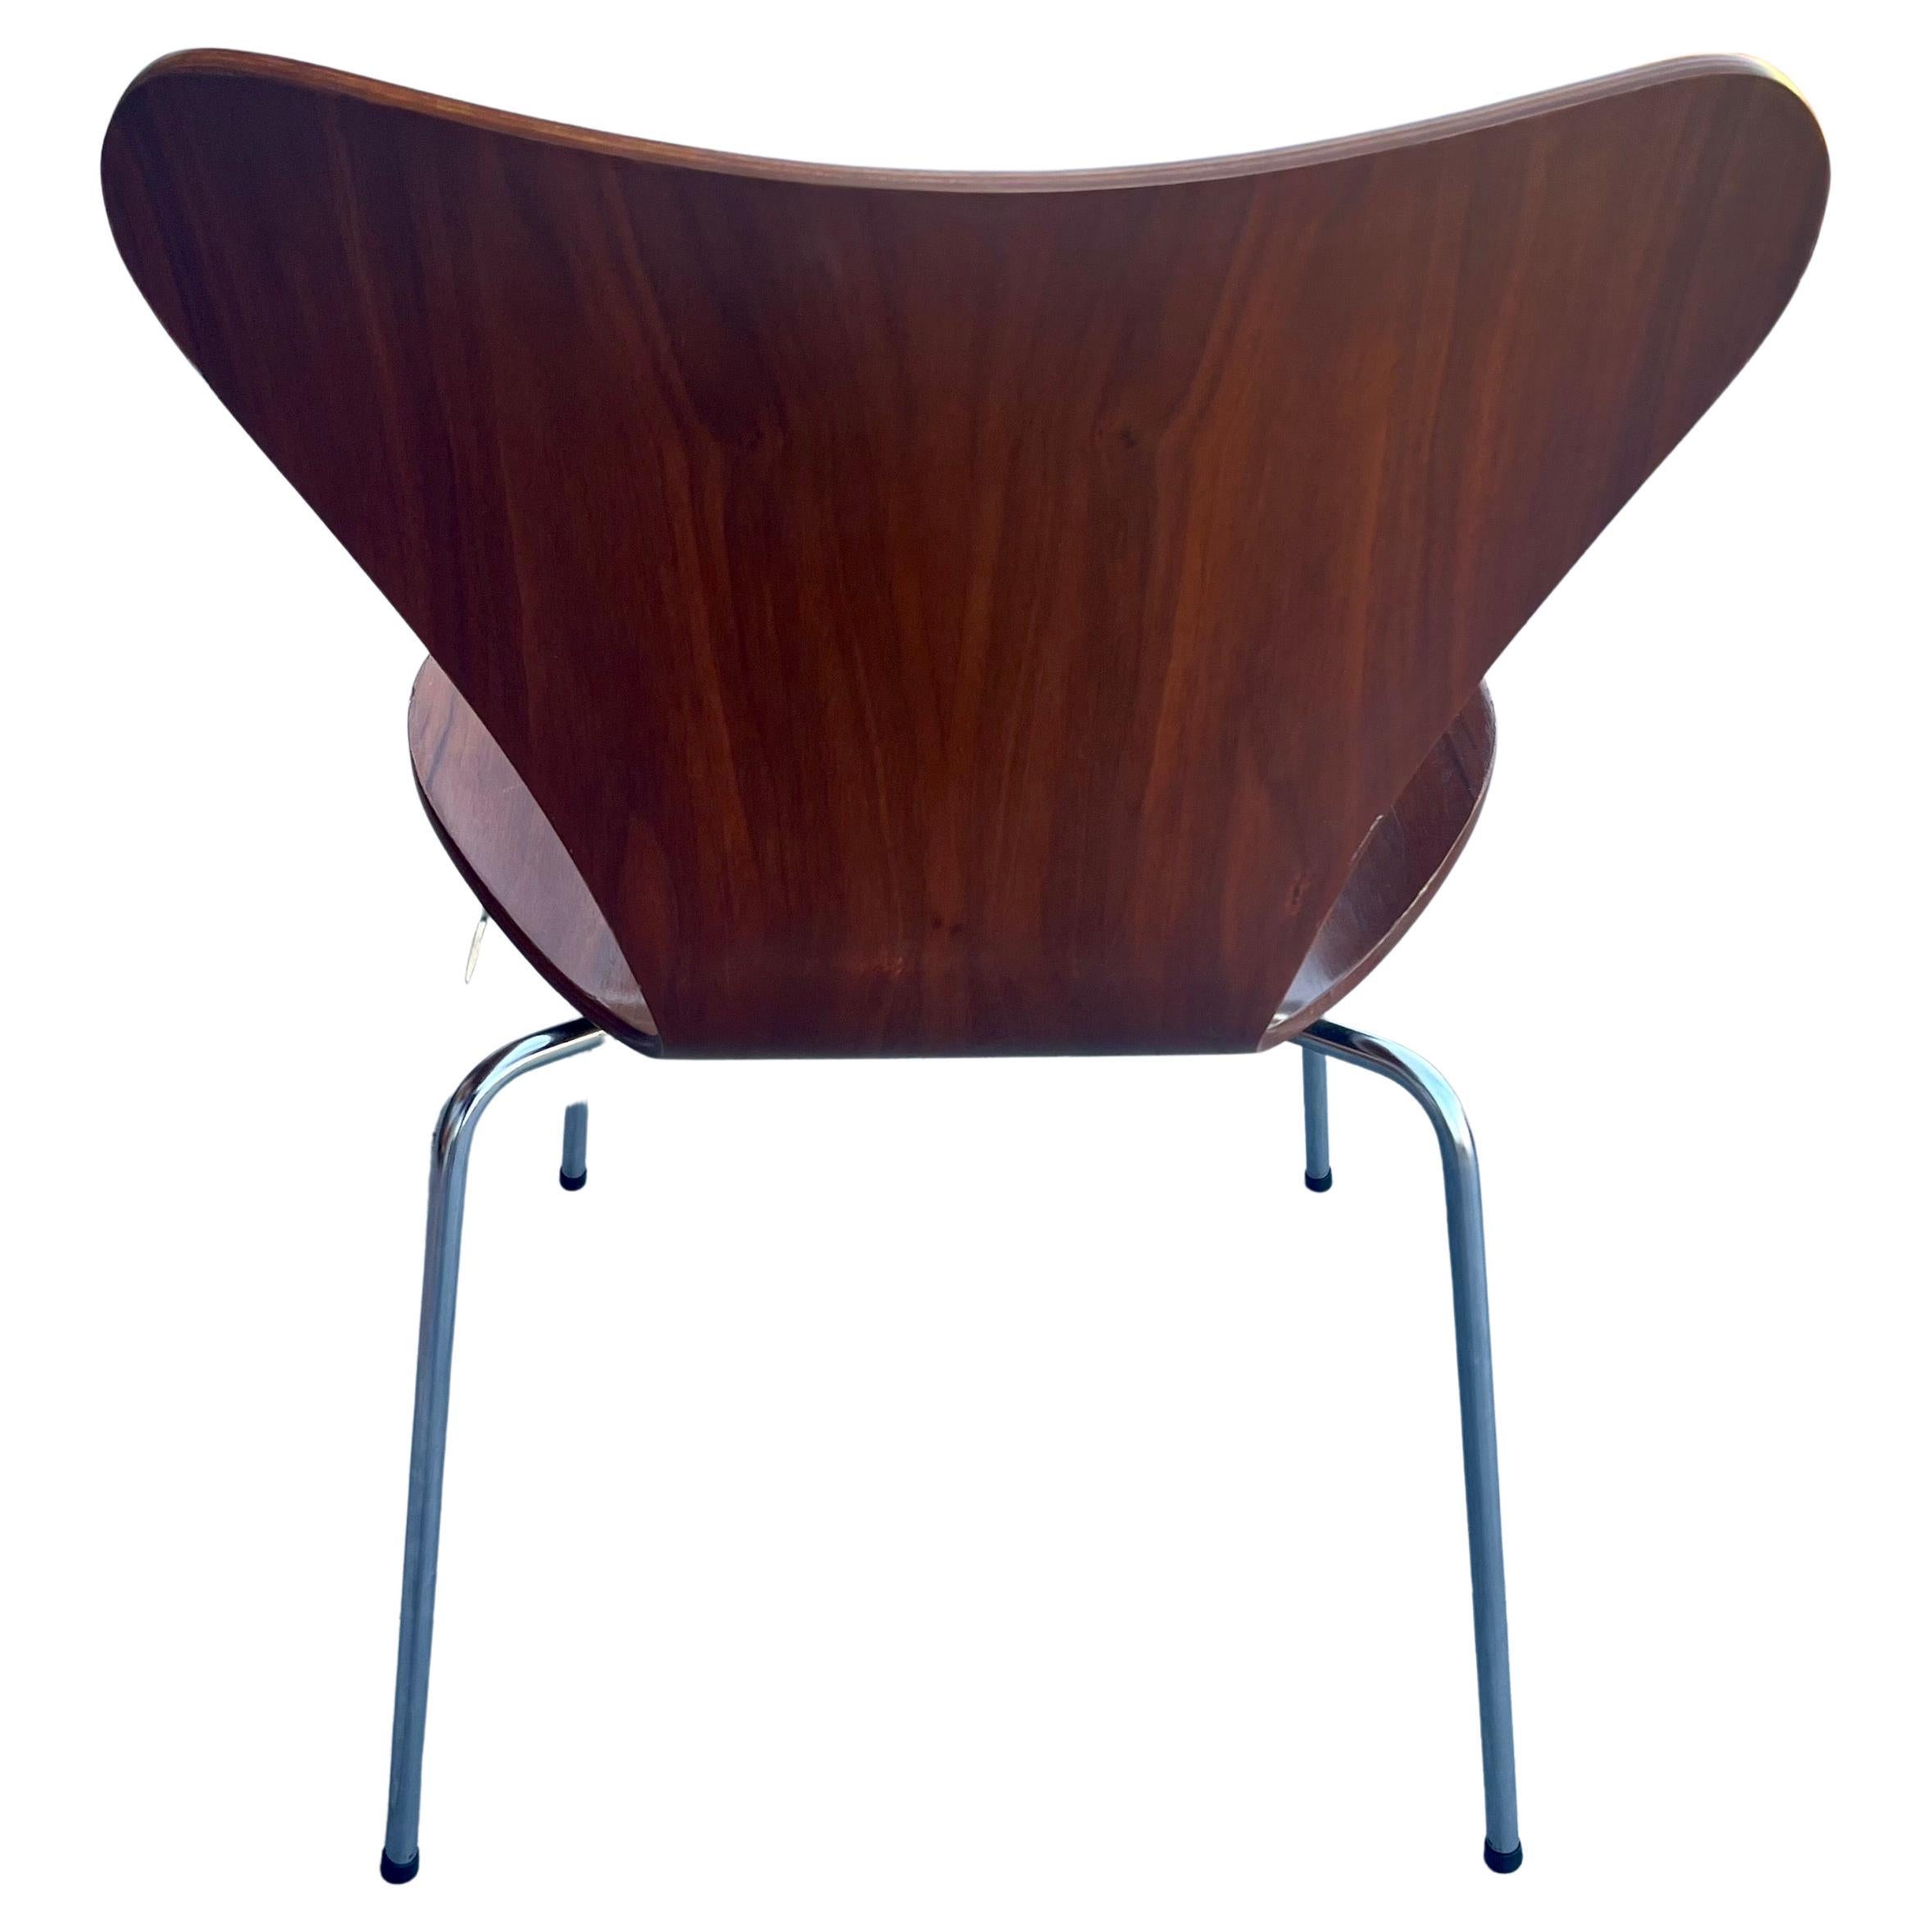 Schöne Serie 7 Stuhl von Arne Jacobsen entworfen, für Fritz Hansen in sehr schönen und sauberen Zustand. schöne dunkle Teakholz Finish sehr sauber solide und robust. Wird mit den originalen Plastikfüßen geliefert.